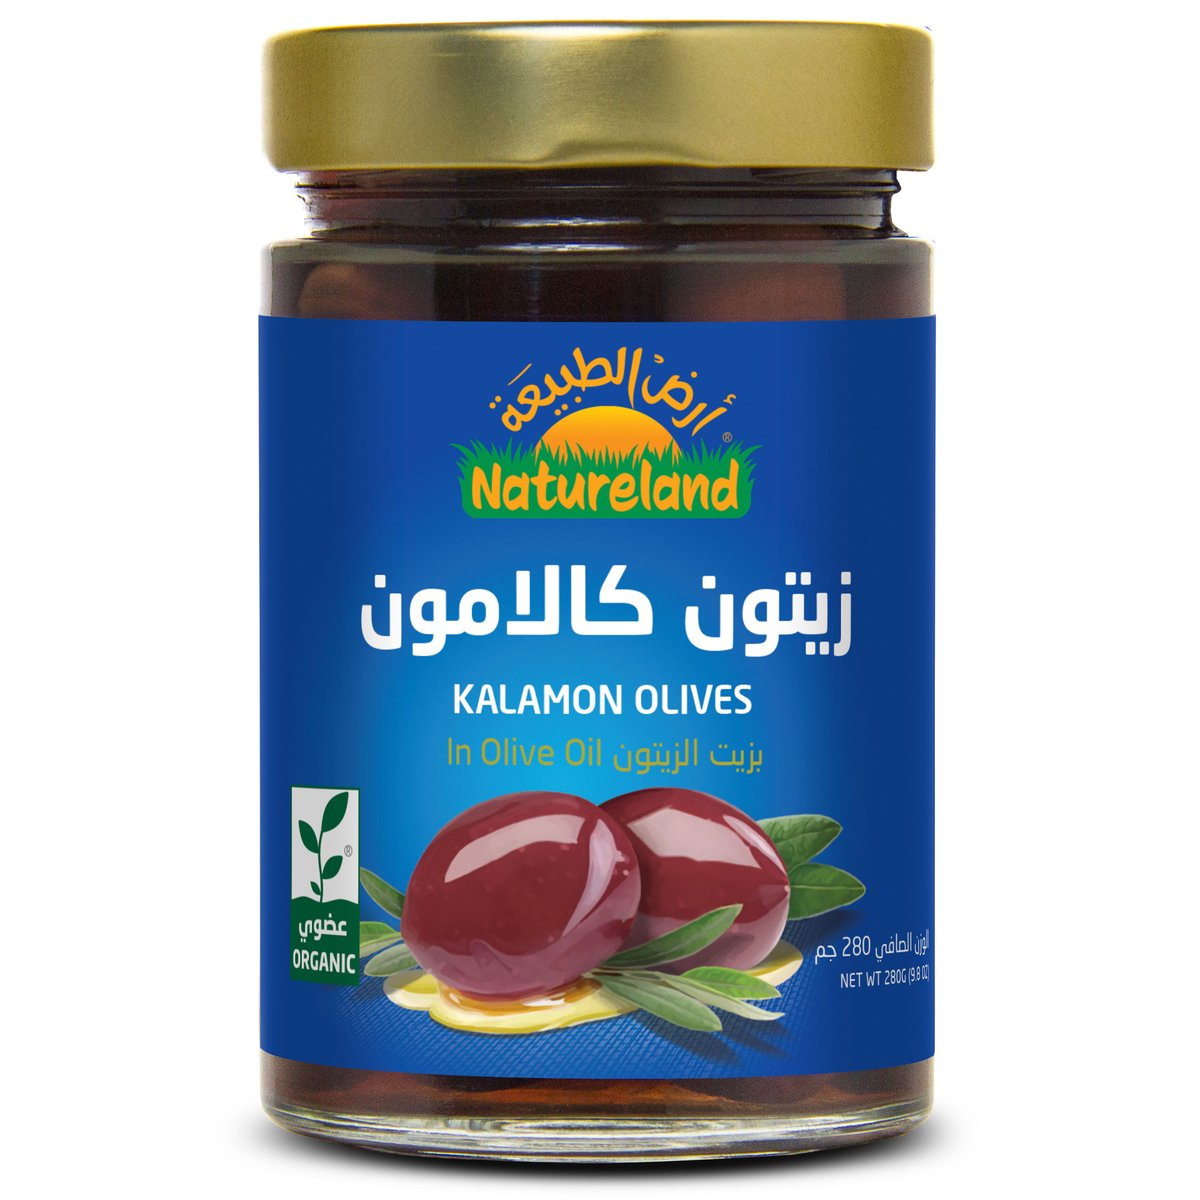 Natureland Kalamon Olives In Olive Oil 280 g